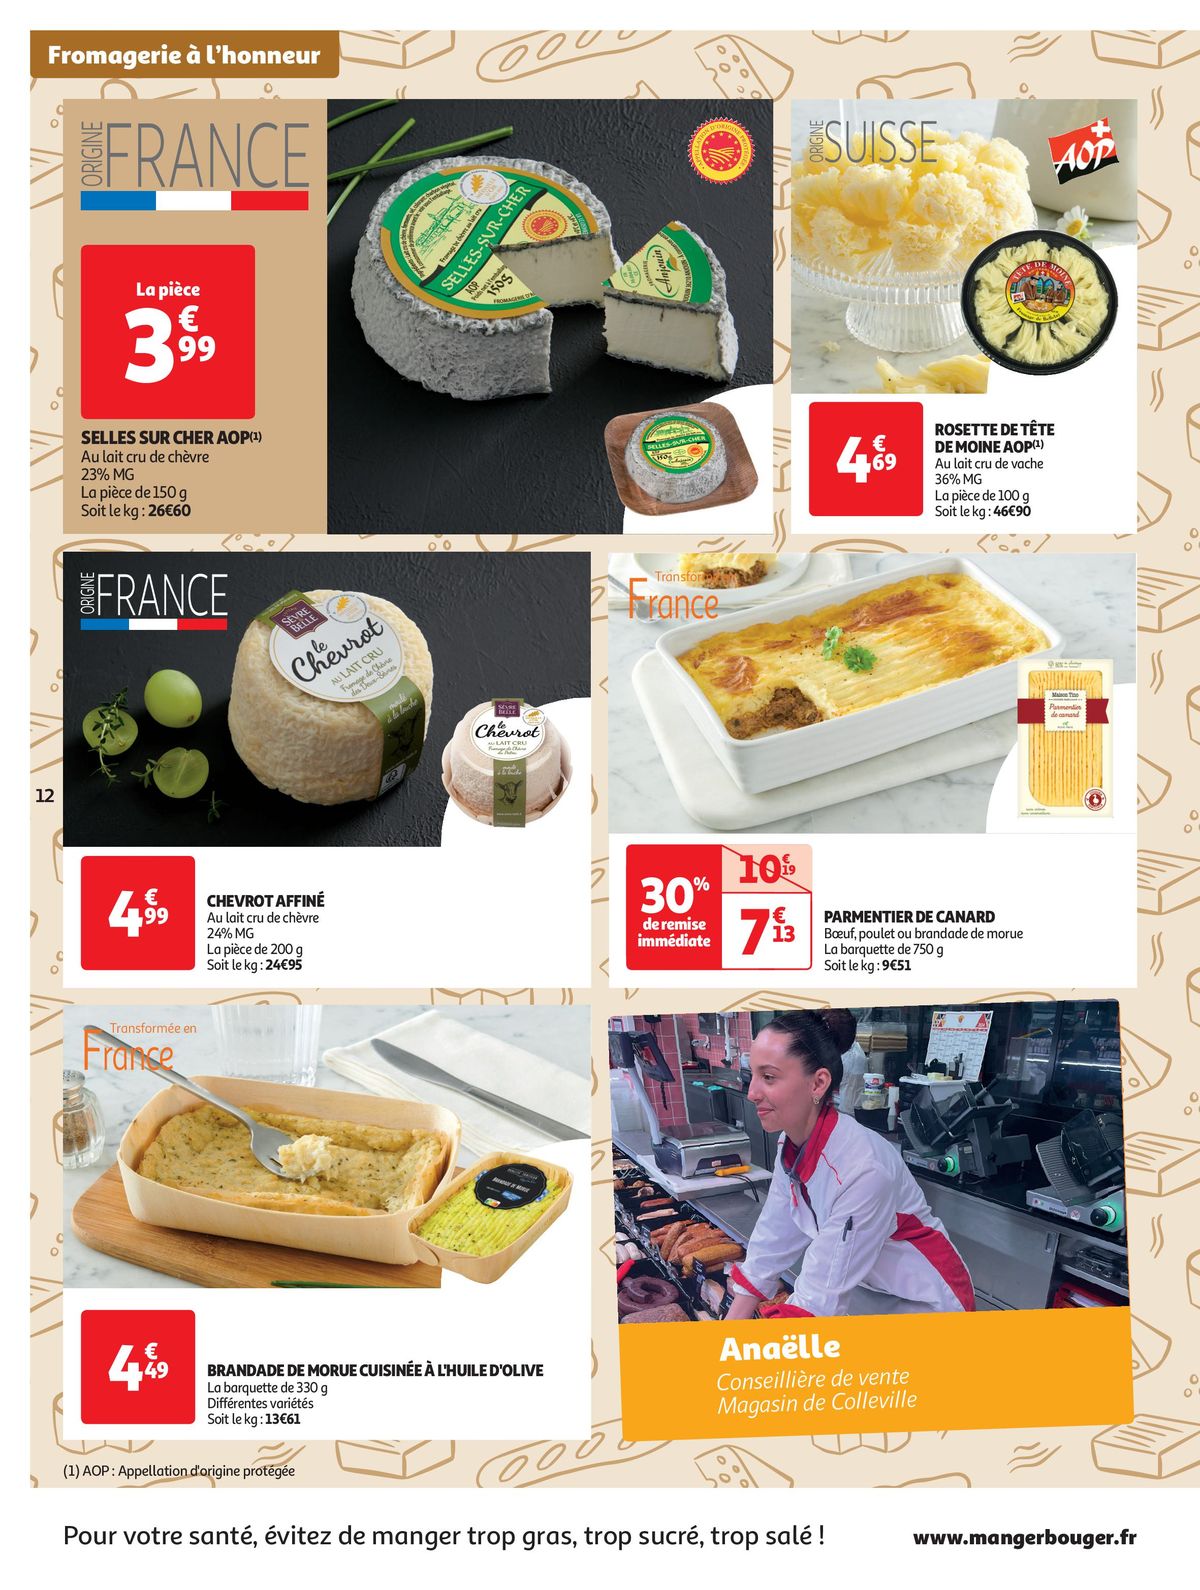 Catalogue Les Halles d'Auchan dans votre Super, page 00012